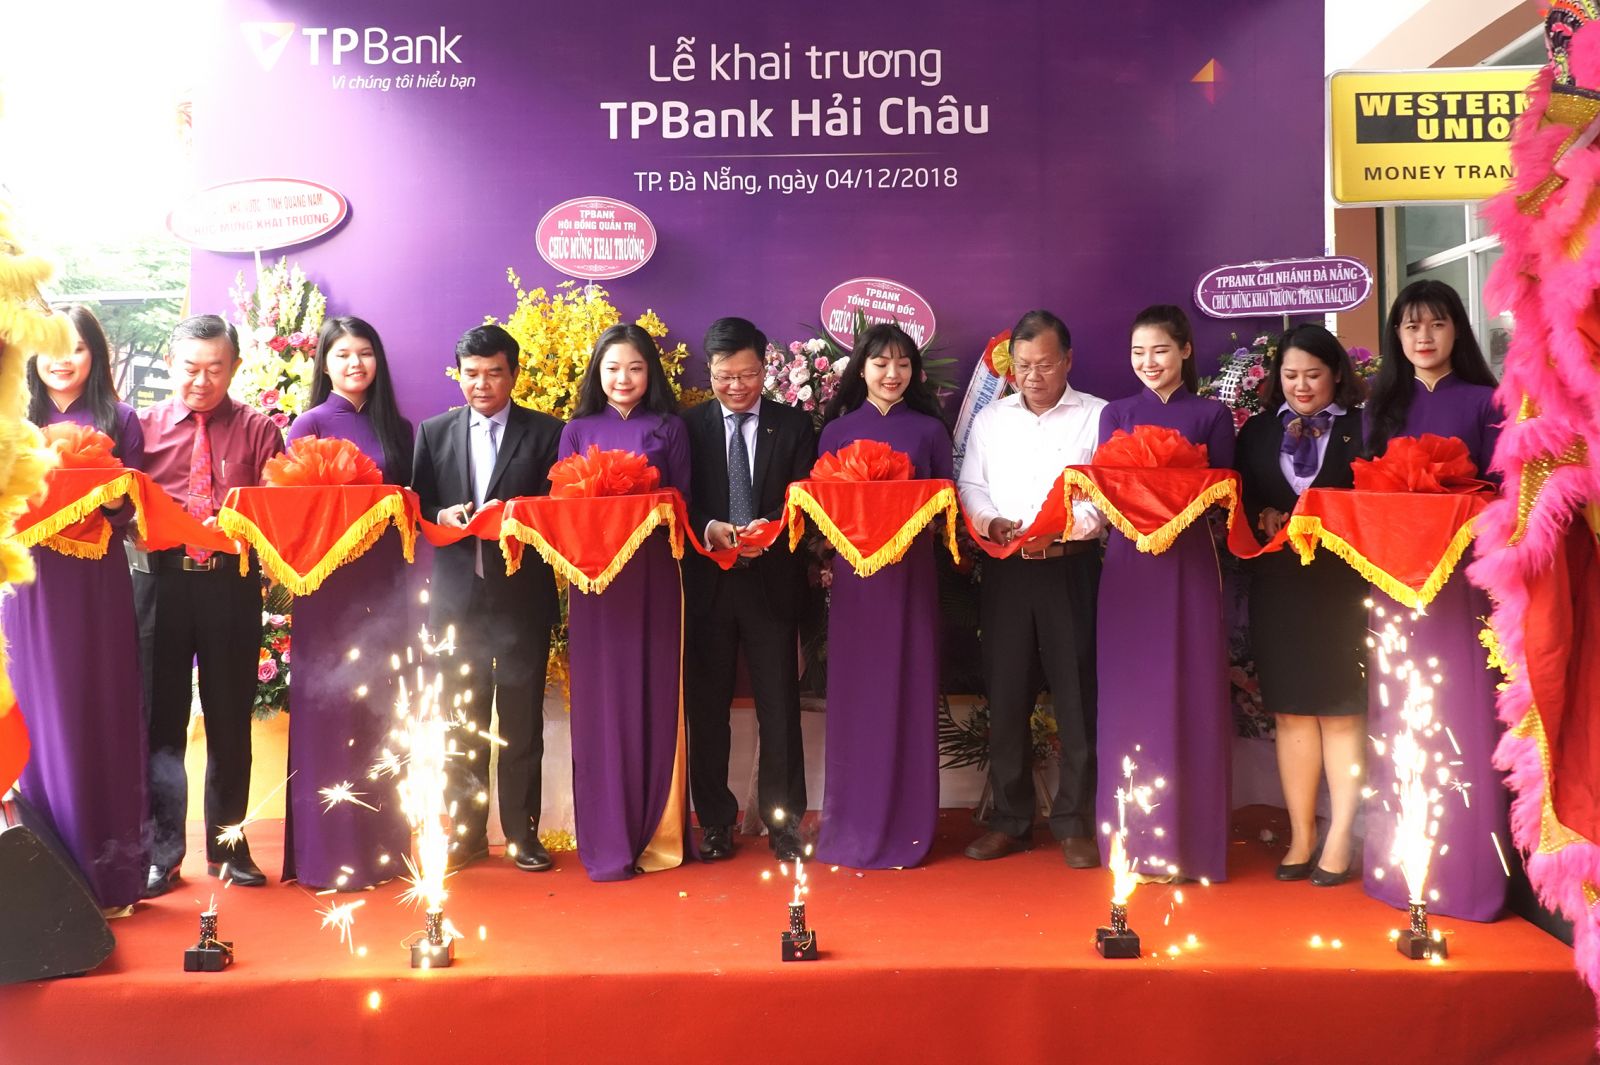 Từ ngày 04/12/2018, Ngân hàng TMCP Tiên Phong (TPBank) chính thức khai trương và đi vào hoạt động điểm giao dịch mới tại quận Hải Châu – TP. Đà Nẵng